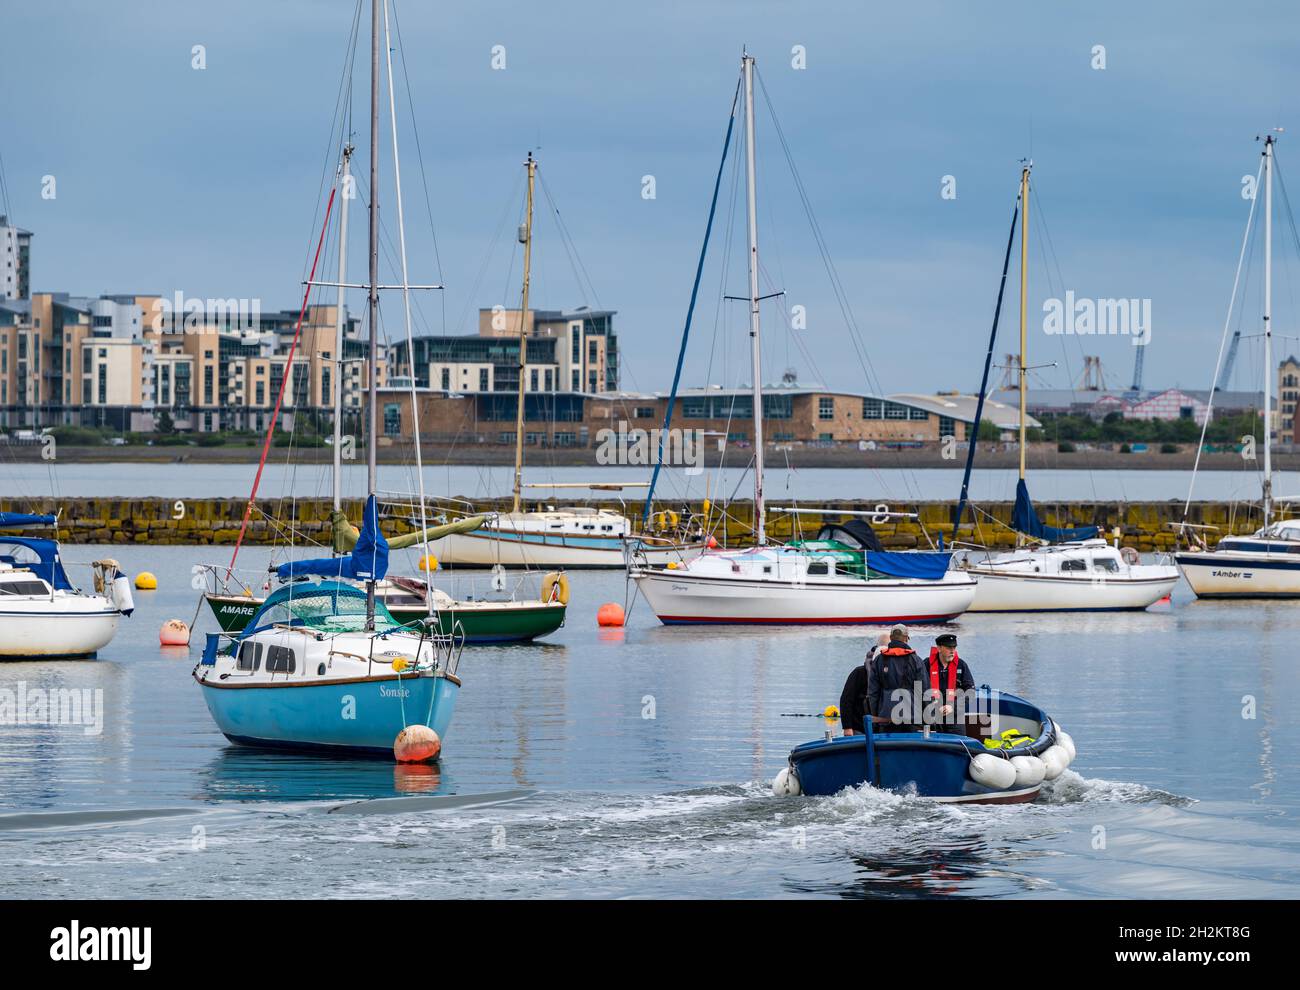 Segelboote im Hafen von Granton an einem sonnigen Tag mit Menschen im Beiboot, Edinburgh, Schottland, Großbritannien Stockfoto